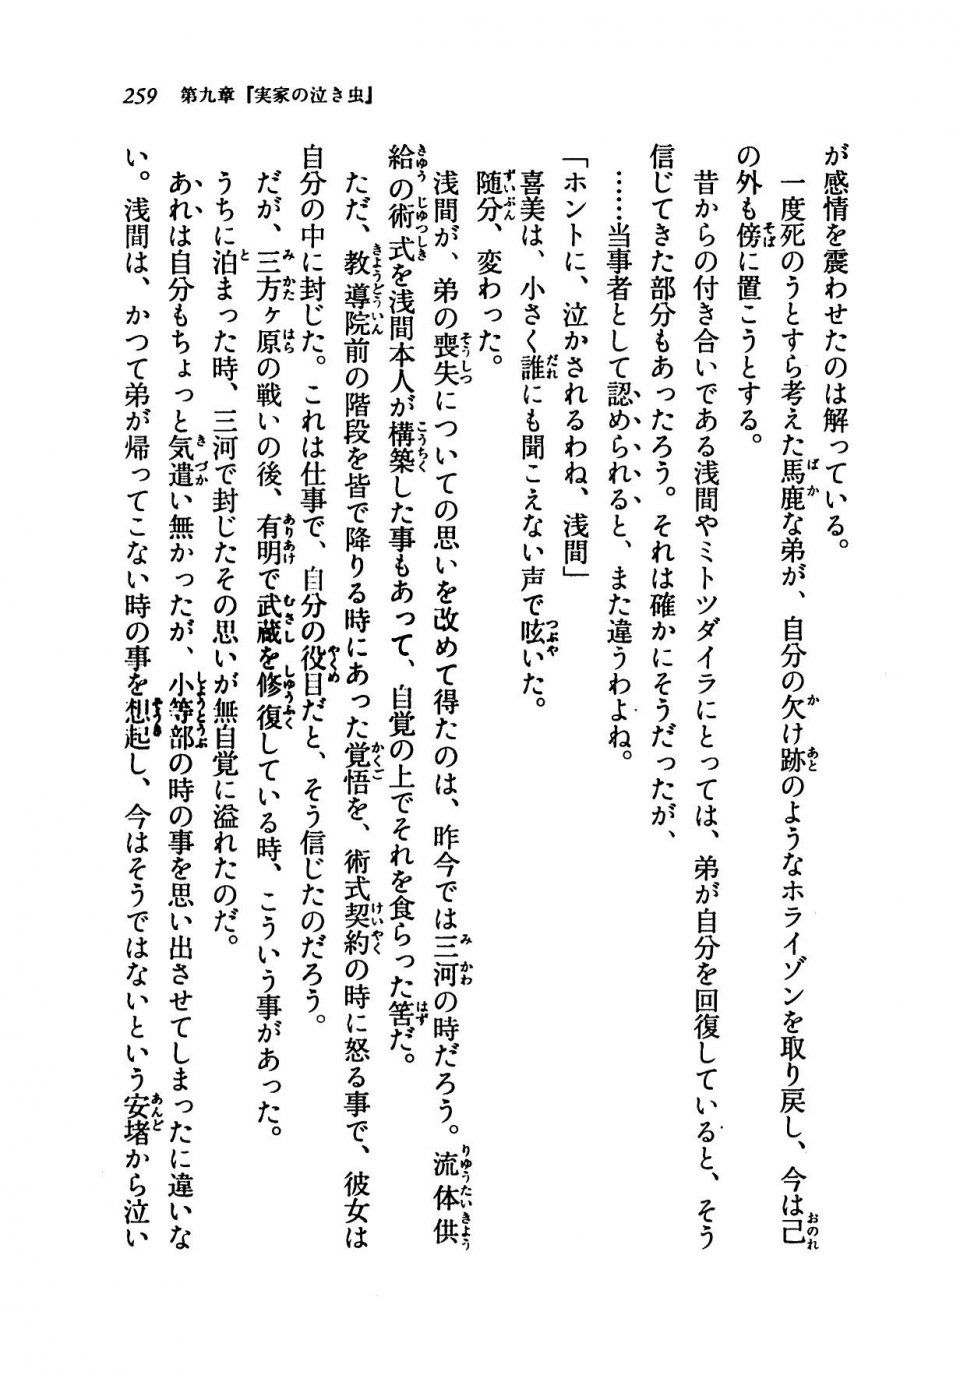 Kyoukai Senjou no Horizon LN Vol 19(8A) - Photo #259